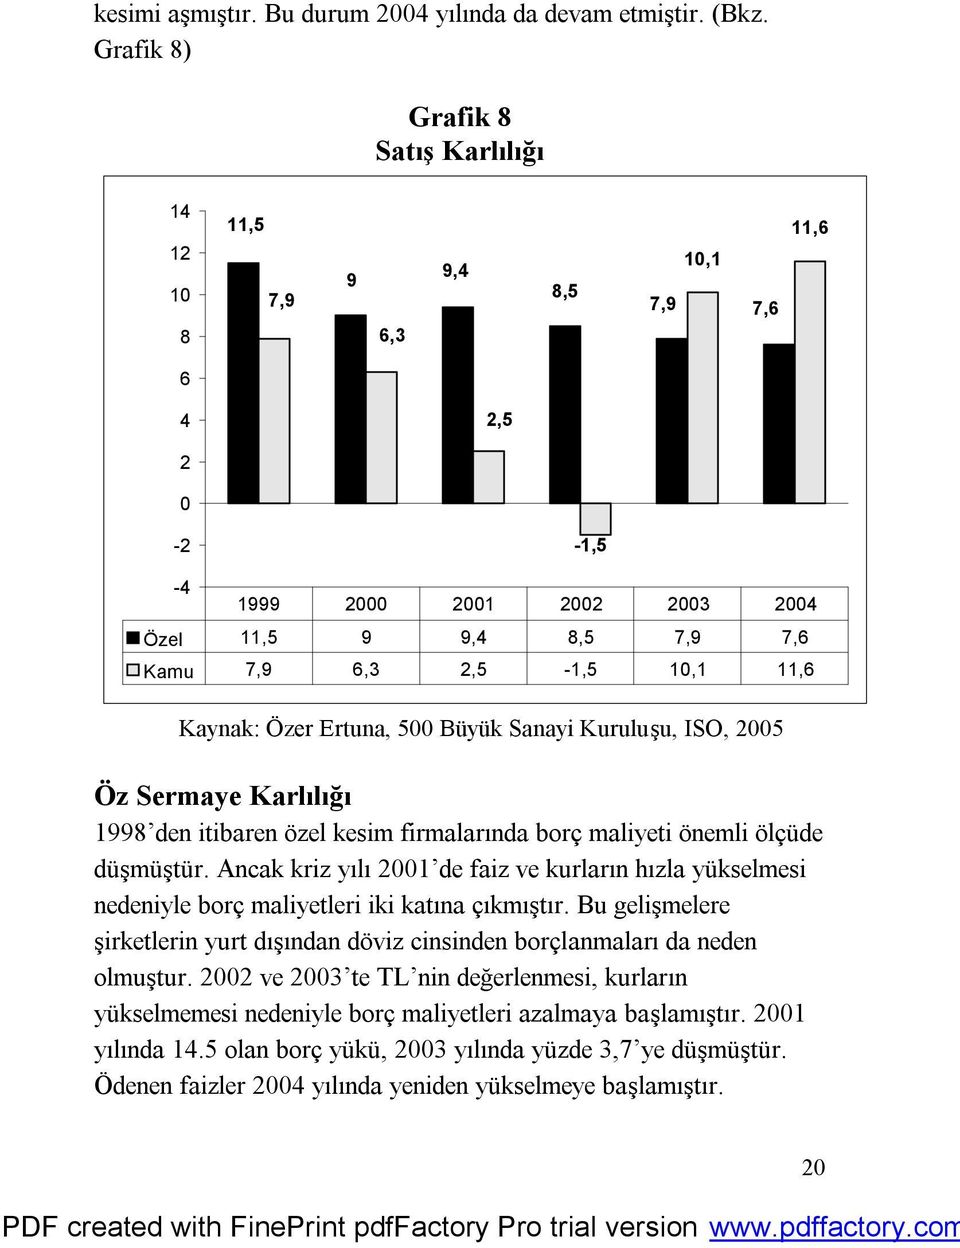 Kaynak: Özer Ertuna, 500 Büyük Sanayi Kuruluşu, ISO, 2005 Öz Sermaye Karlılığı 1998 den itibaren özel kesim firmalarında borç maliyeti önemli ölçüde düşmüştür.